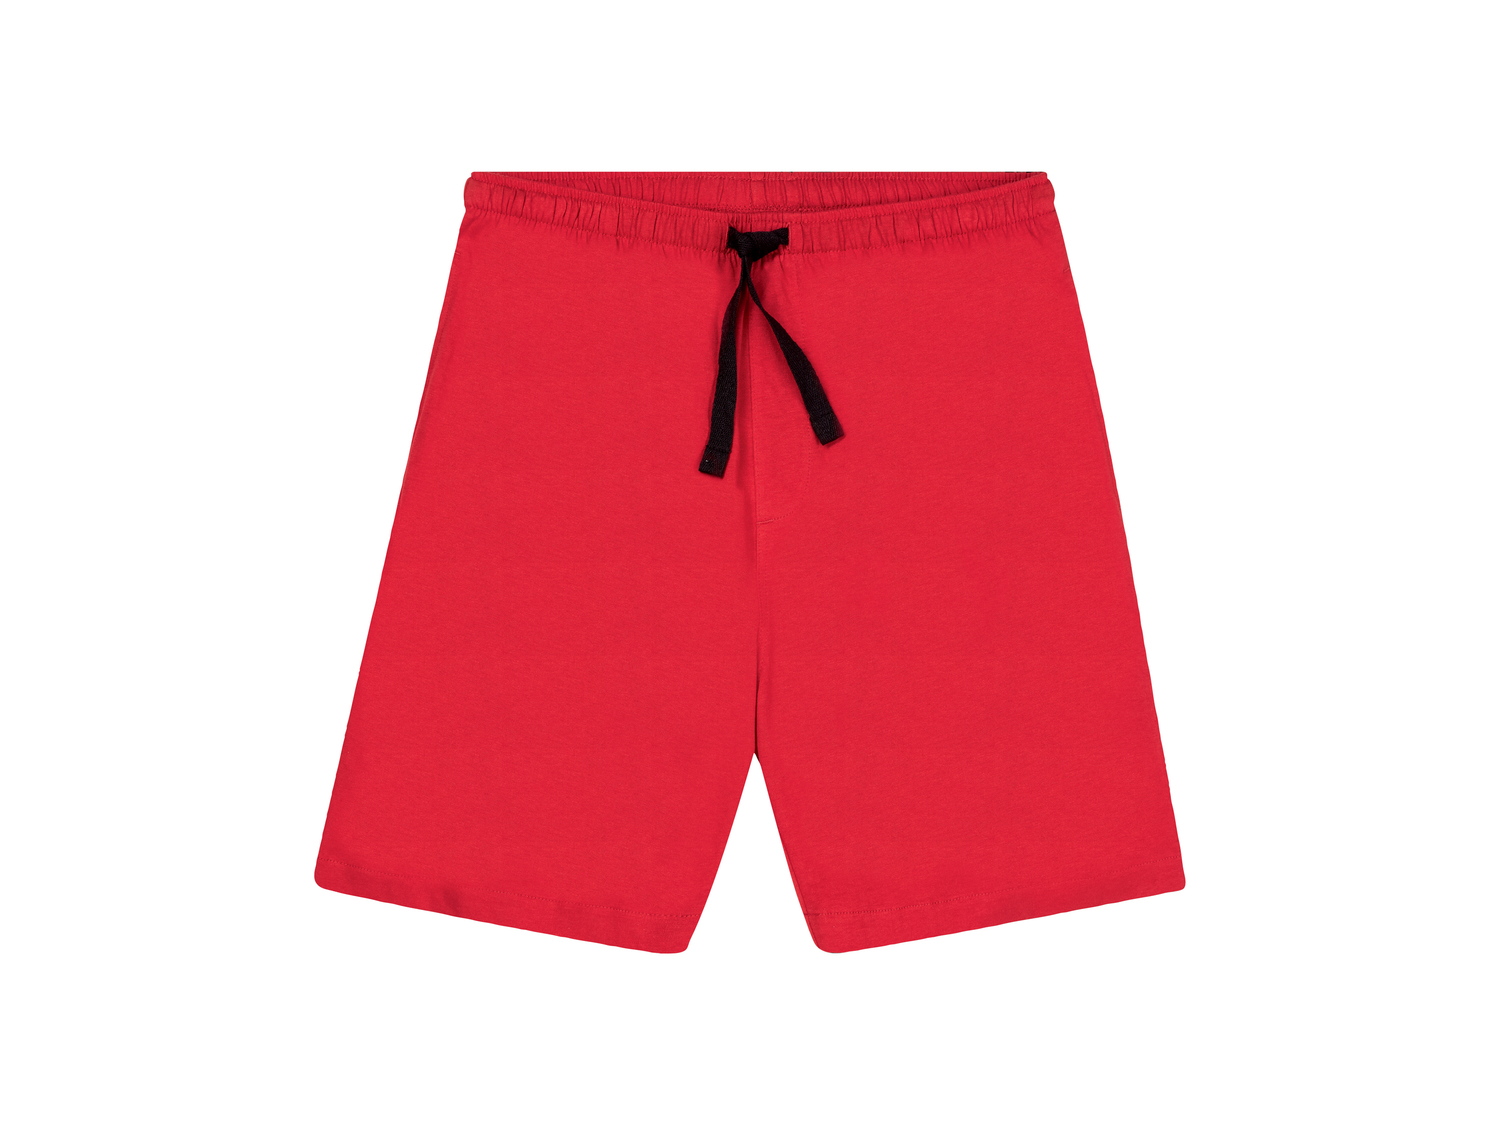 Shorts pigiama da uomo Livergy, prezzo 3.99 &#8364; 
Misure: S-XL
Taglie disponibili

Caratteristiche

- ...